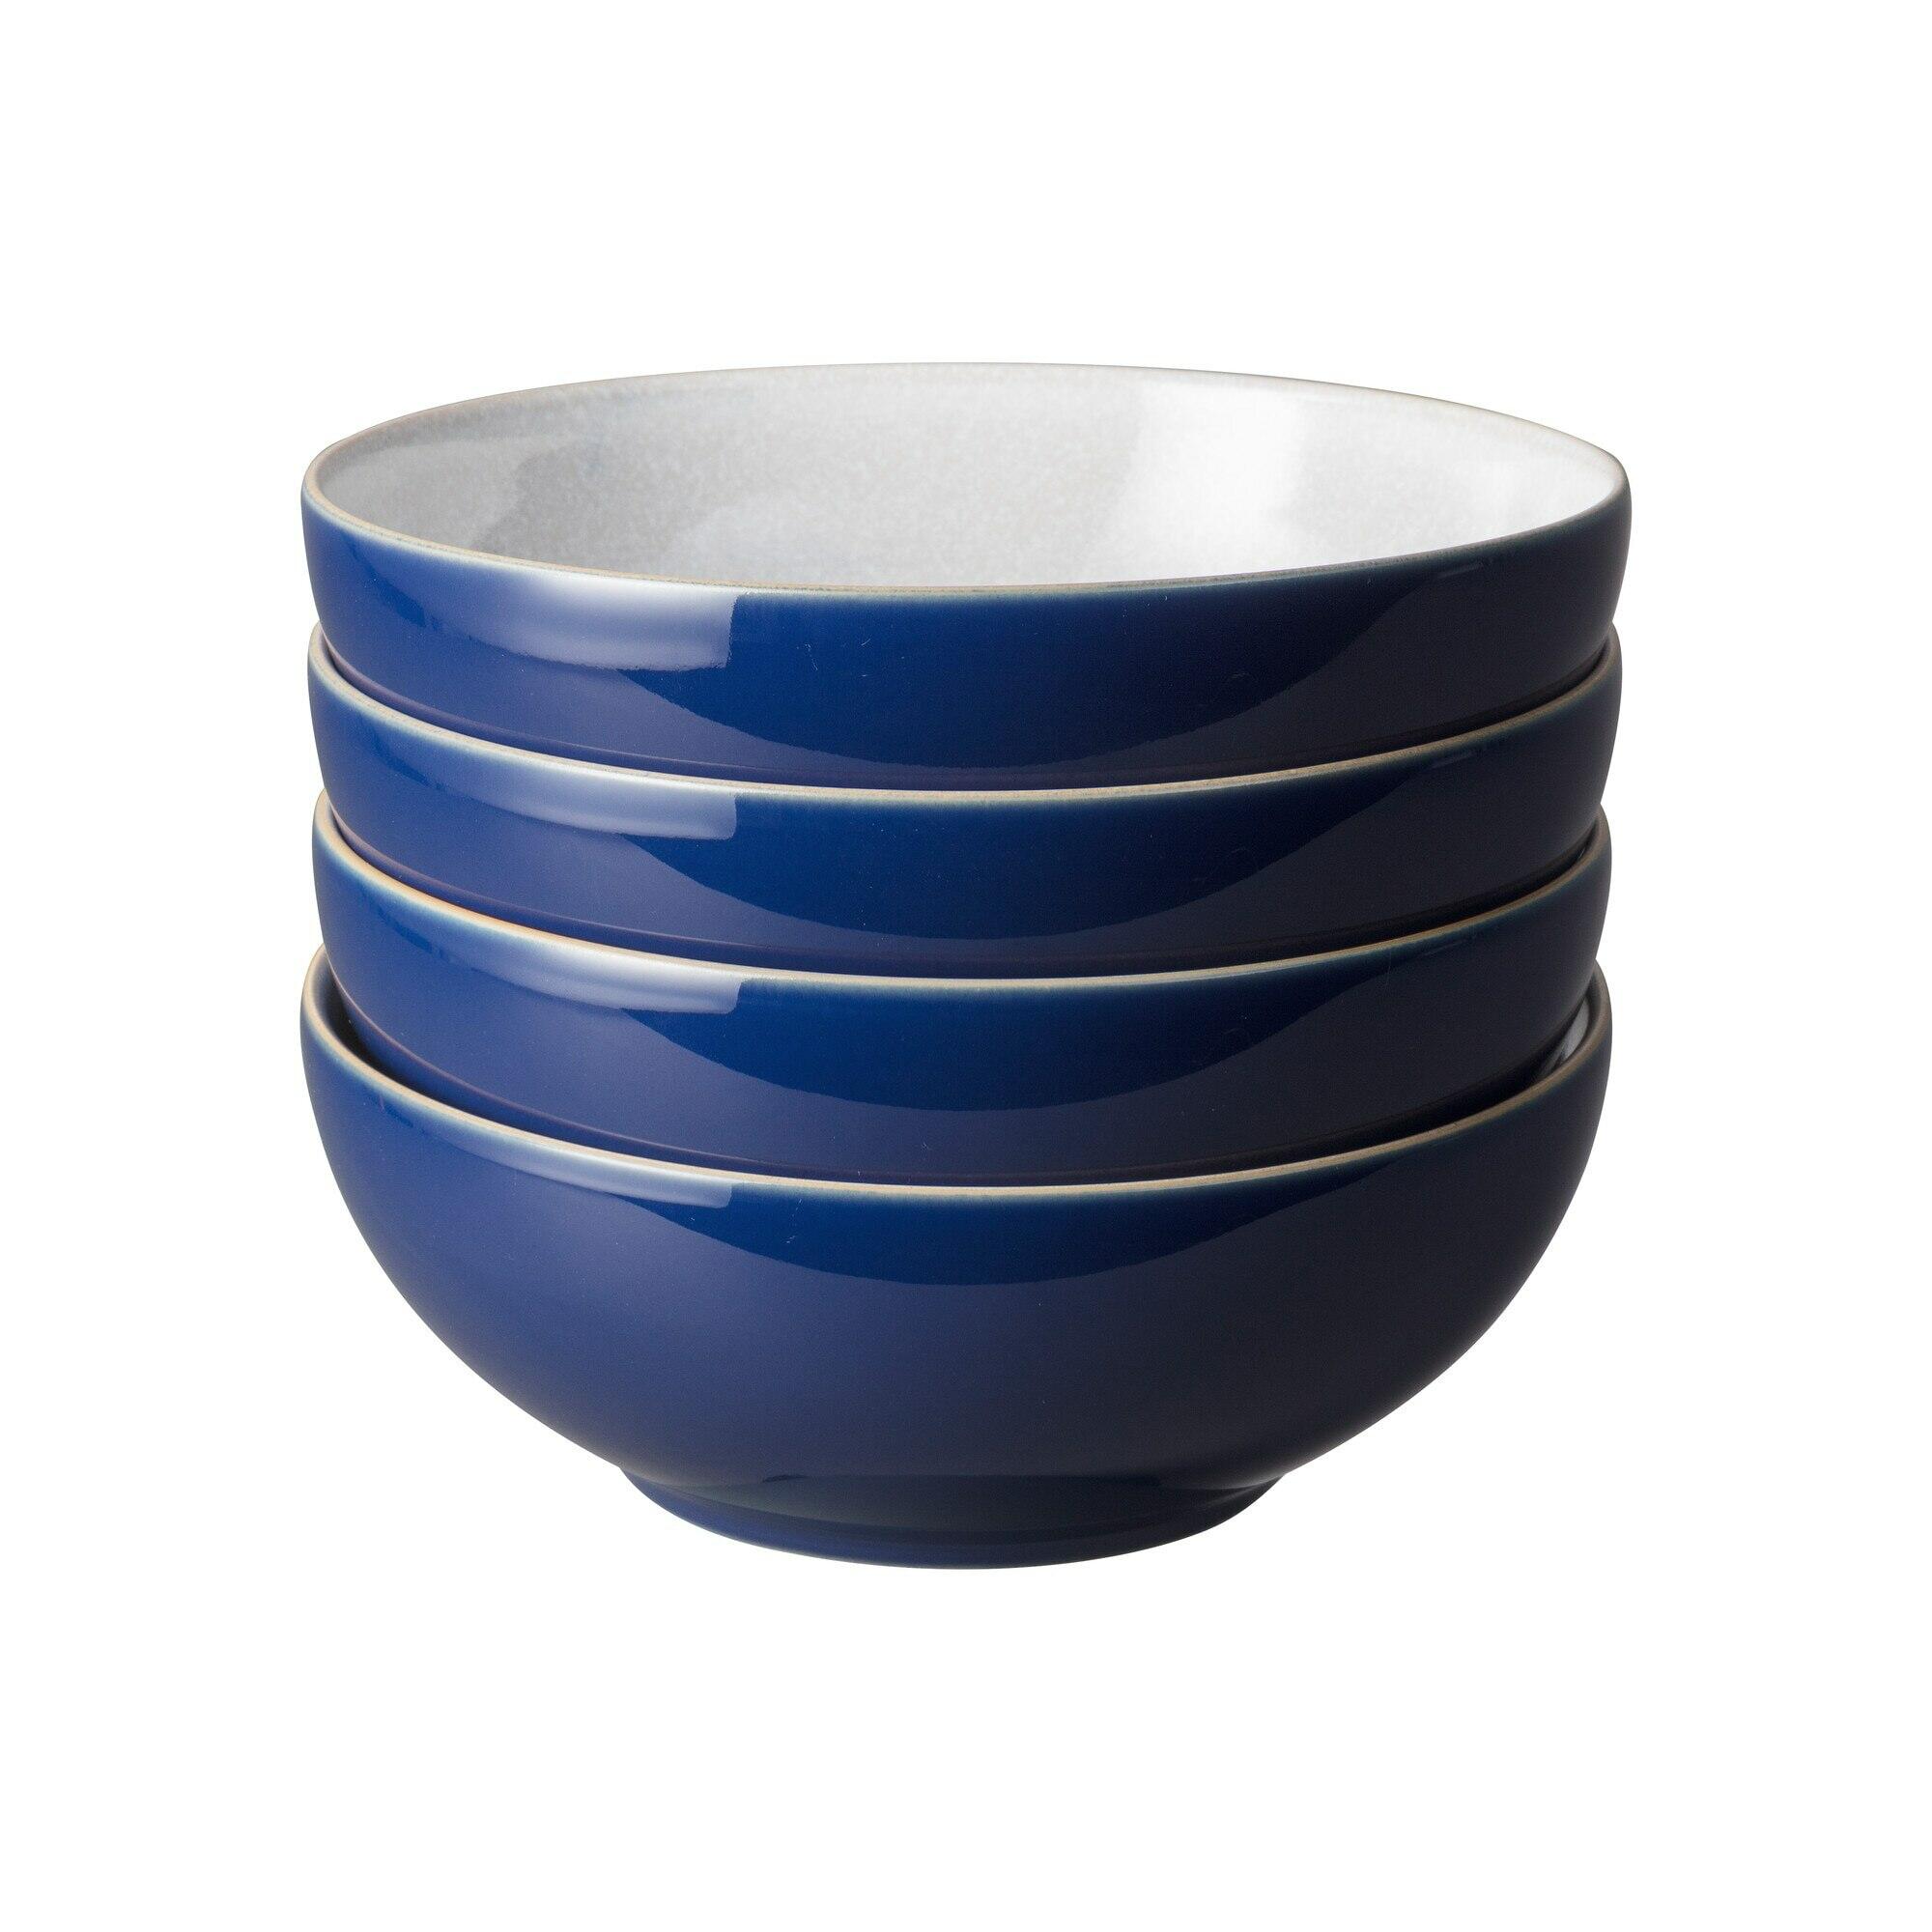 Elements Dark Blue 4Pc Cereal Bowl Set